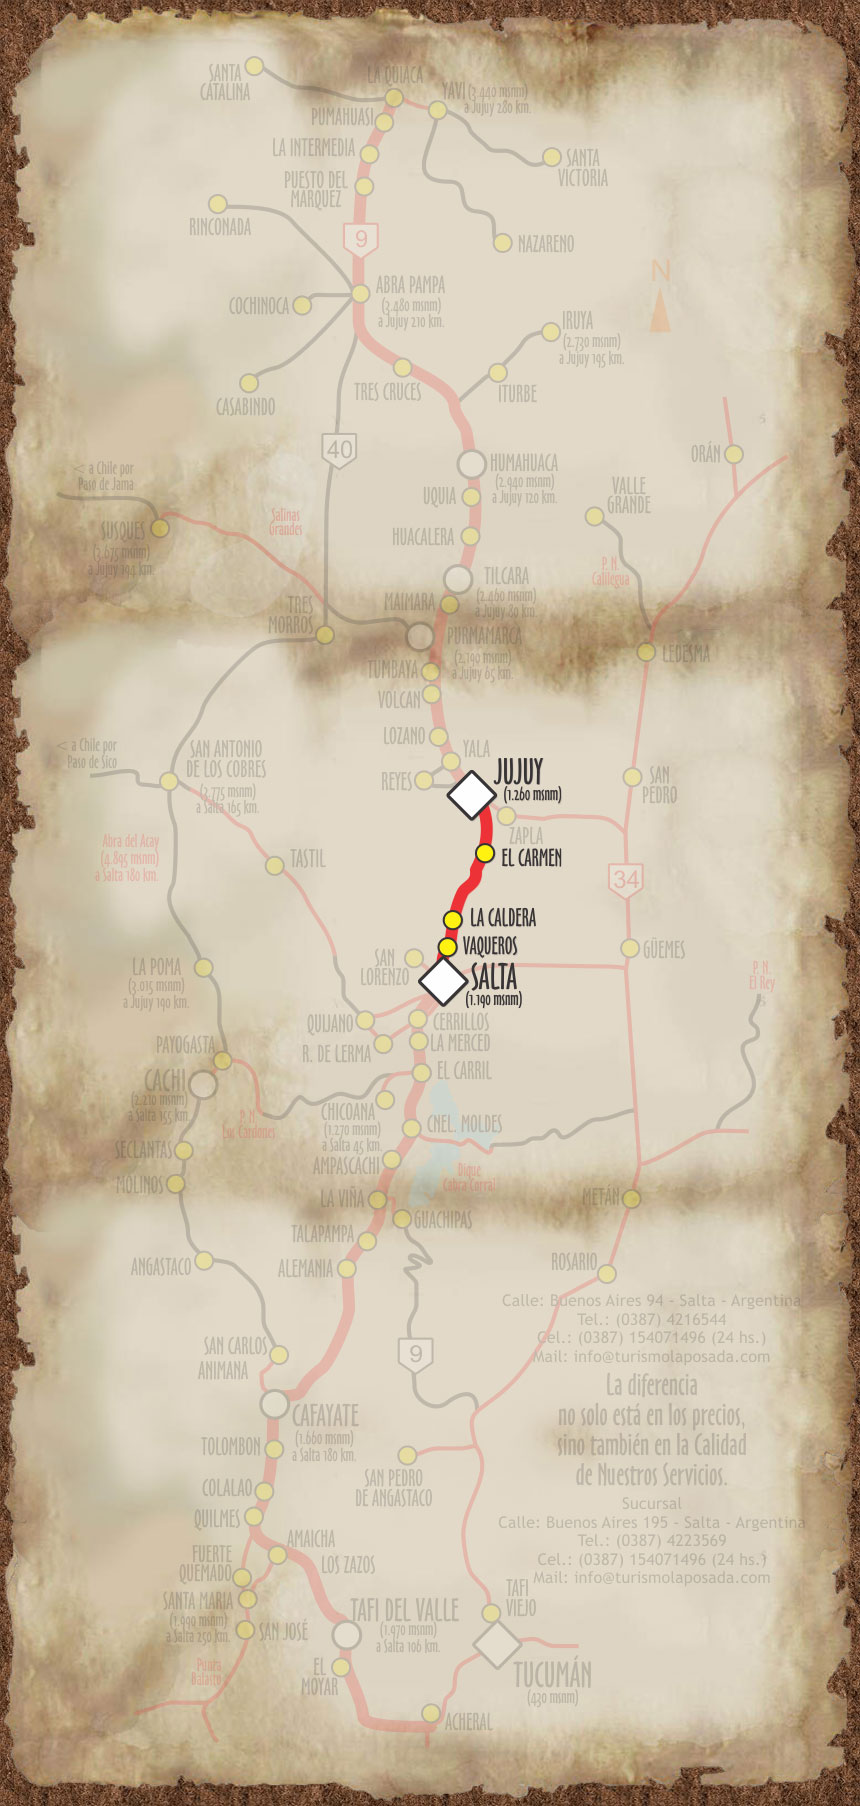 Imagen, con el mapa personalizado, del recorrido a la provincia de Jujuy.